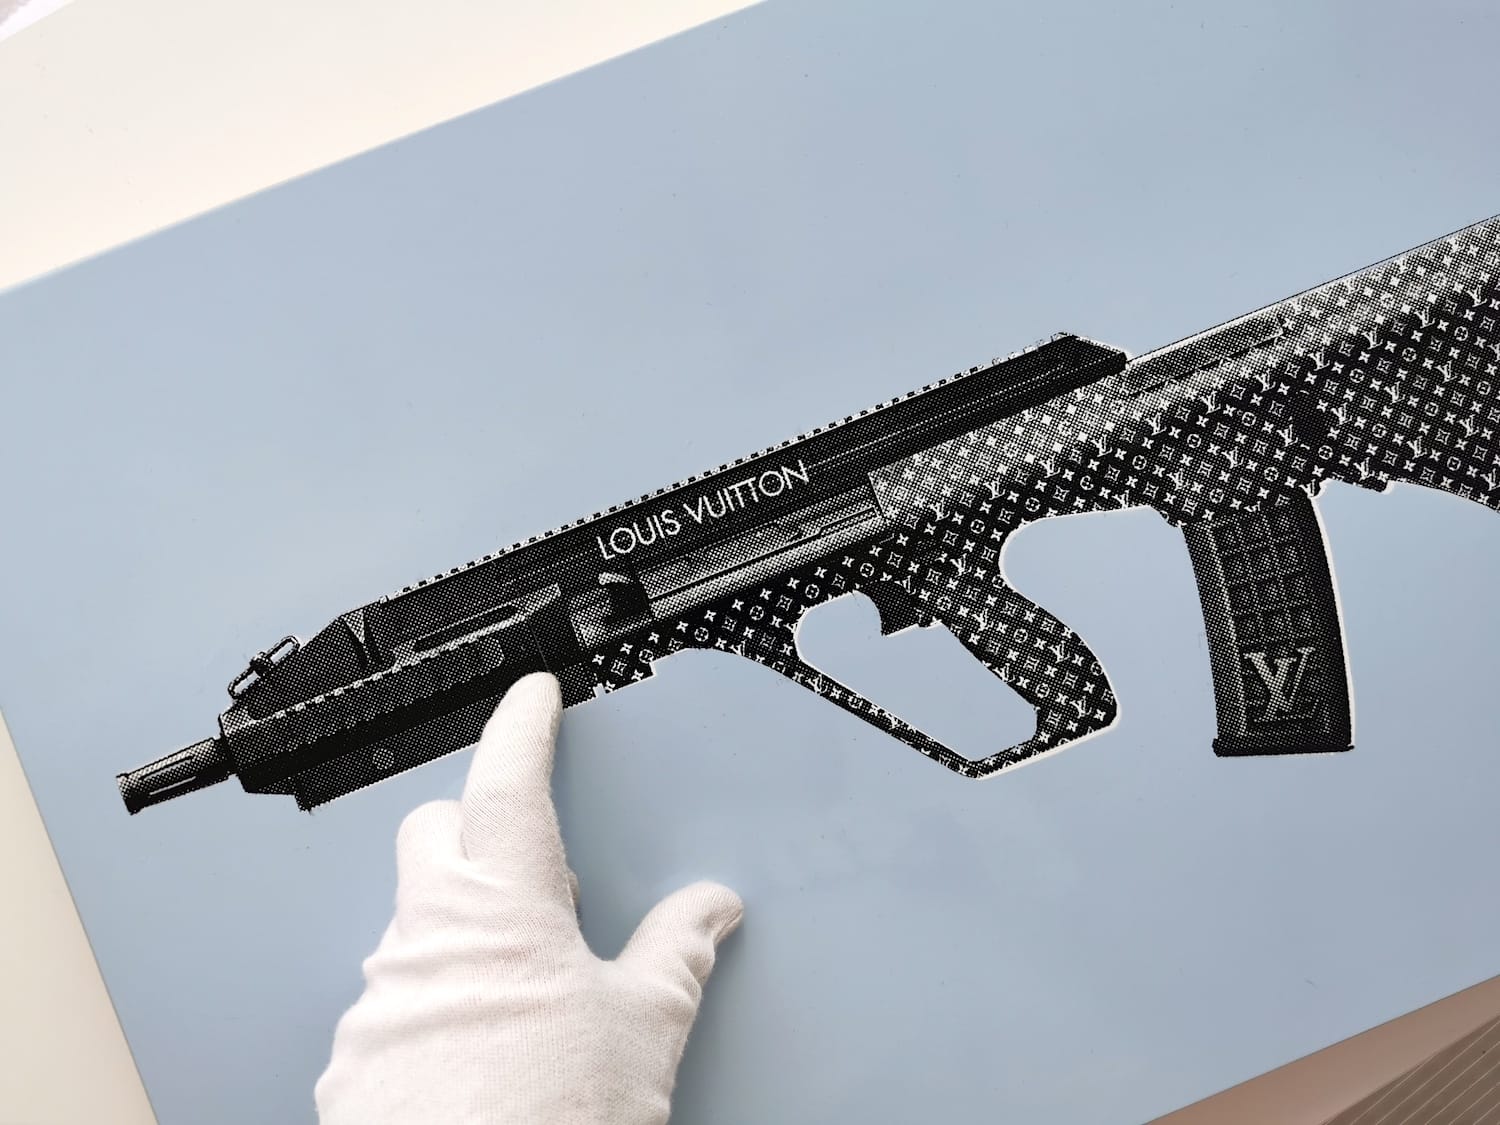 ArtStation - Hypebeast gun (Louis Vuitton)